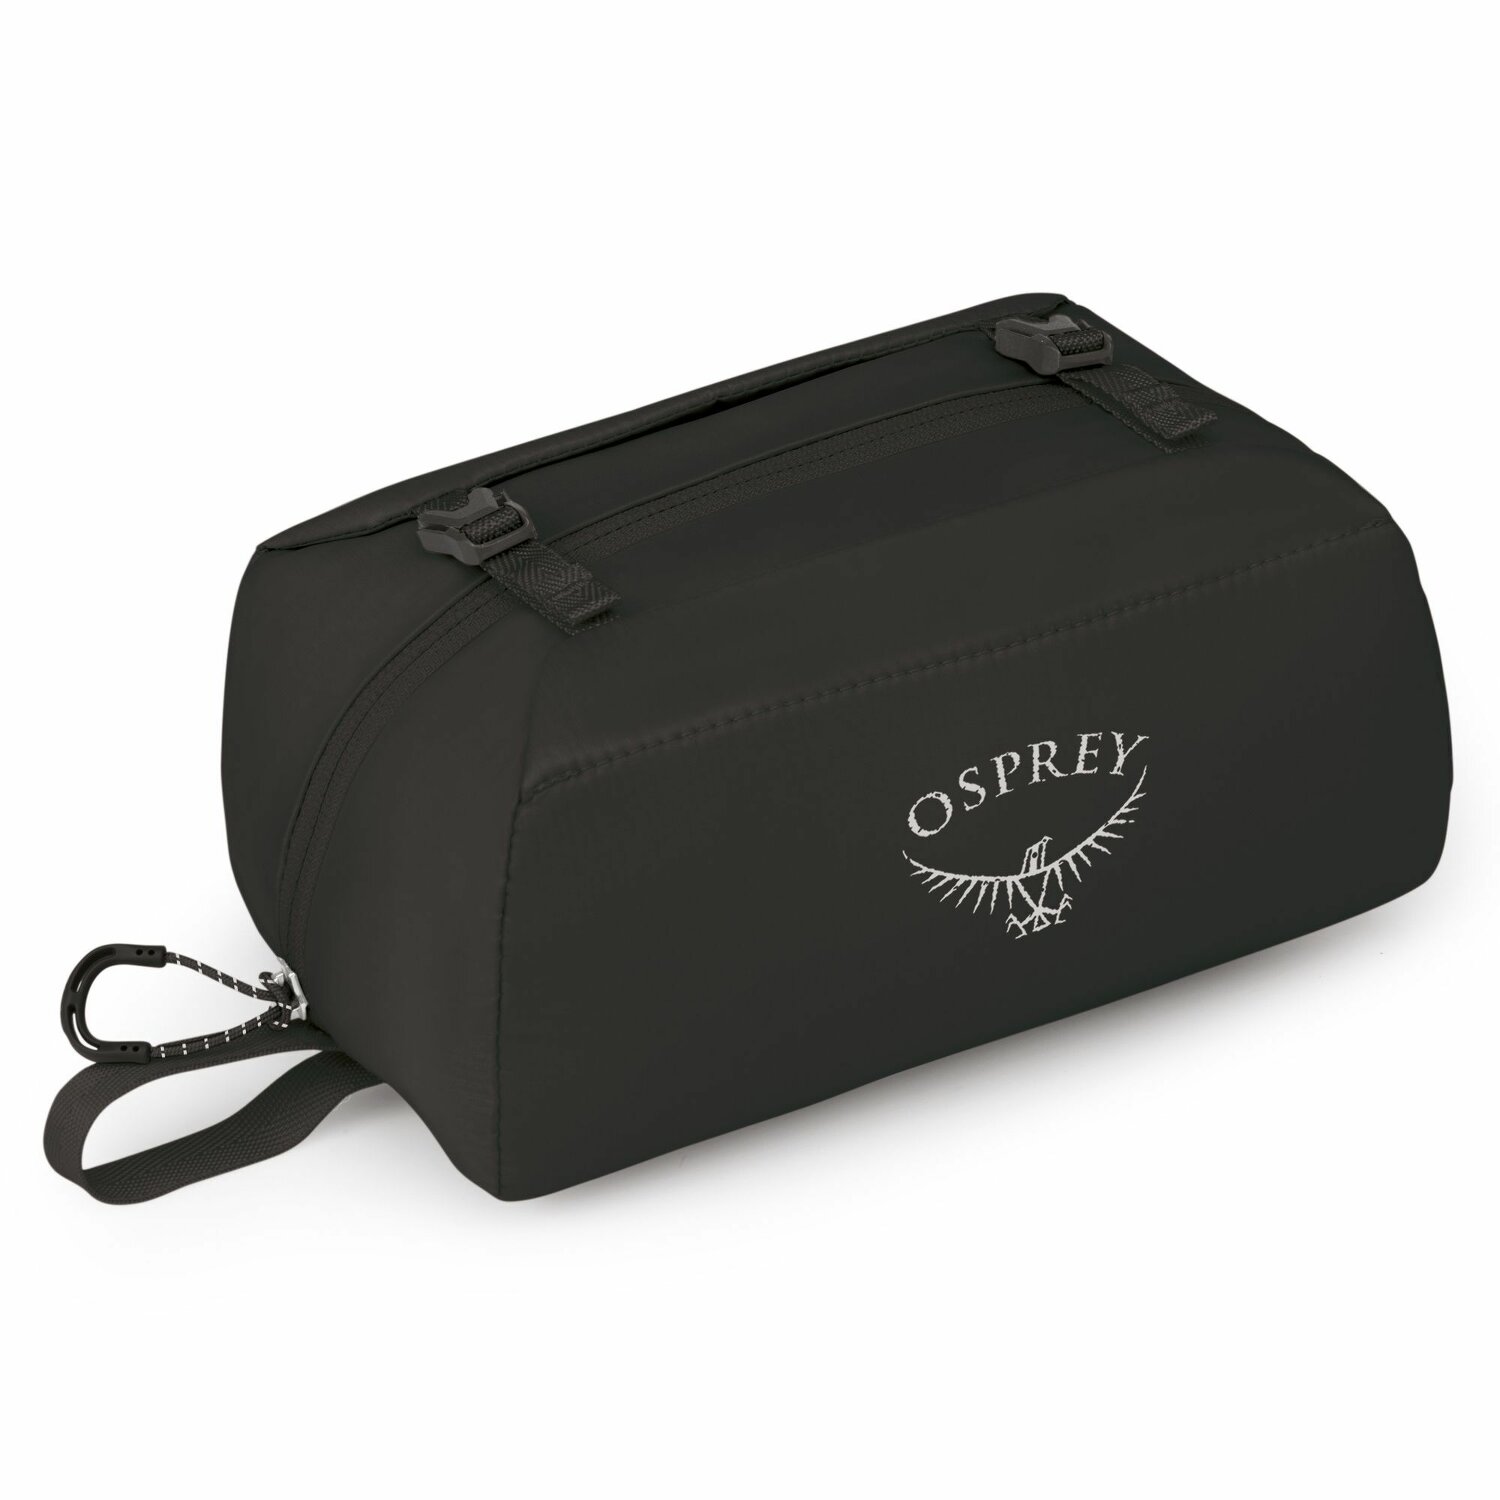 Uitgestorven Paradox Uitstekend Osprey Ultralight Padded Organizer Toilettas 20 cm black | Bagage24.nl